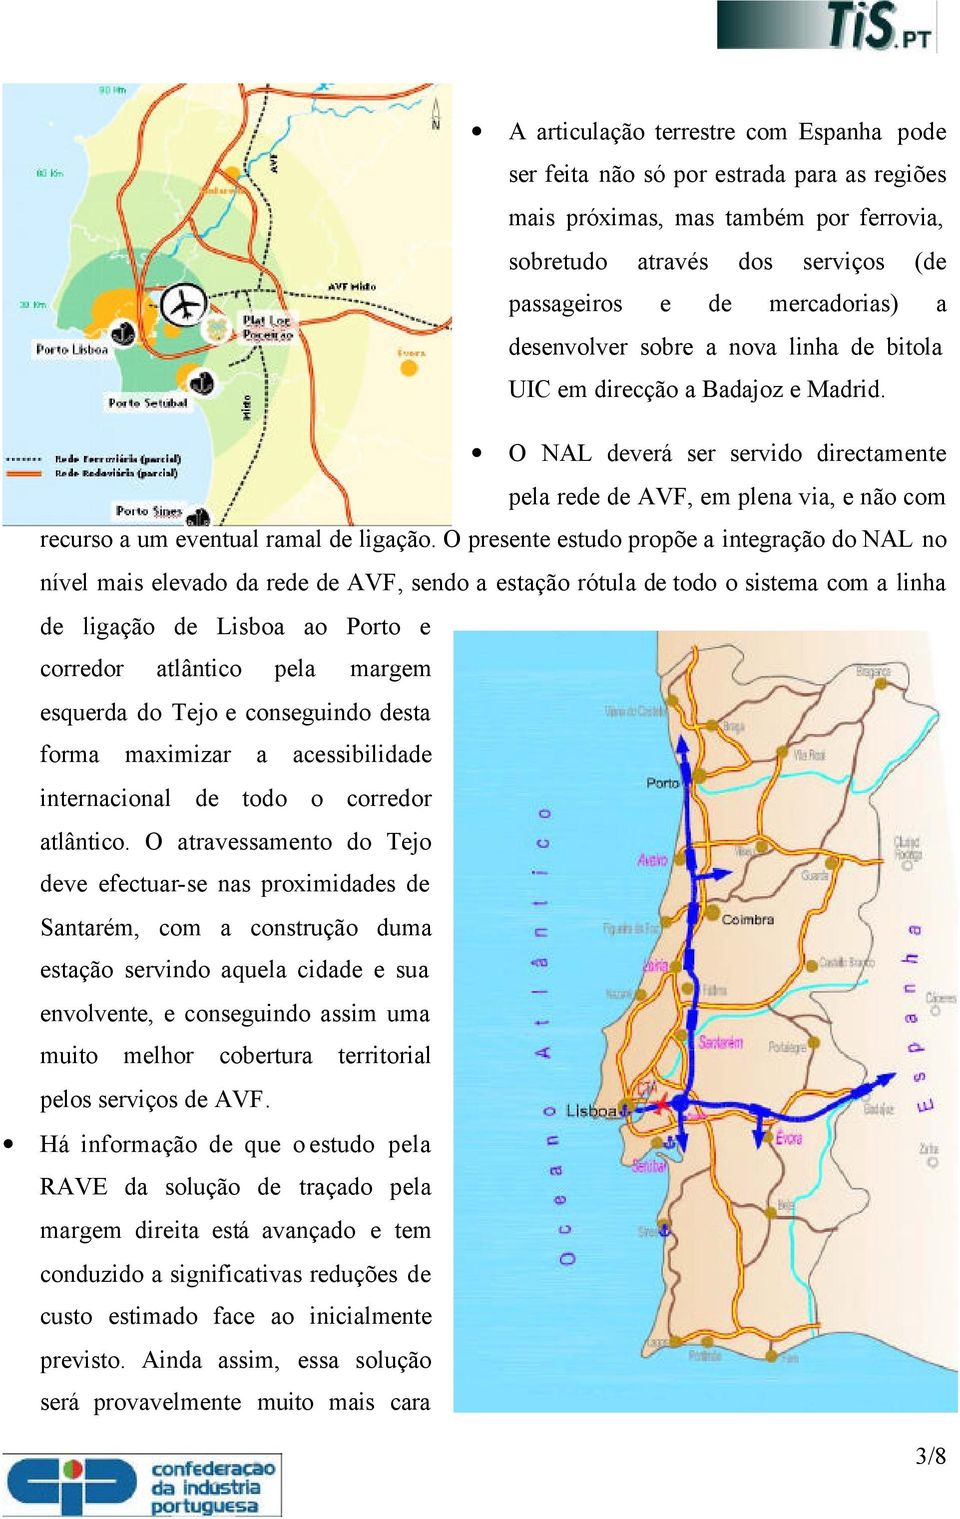 O presente estudo propõe a integração do NAL no nível mais elevado da rede de AVF, sendo a estação rótula de todo o sistema com a linha de ligação de Lisboa ao Porto e corredor atlântico pela margem